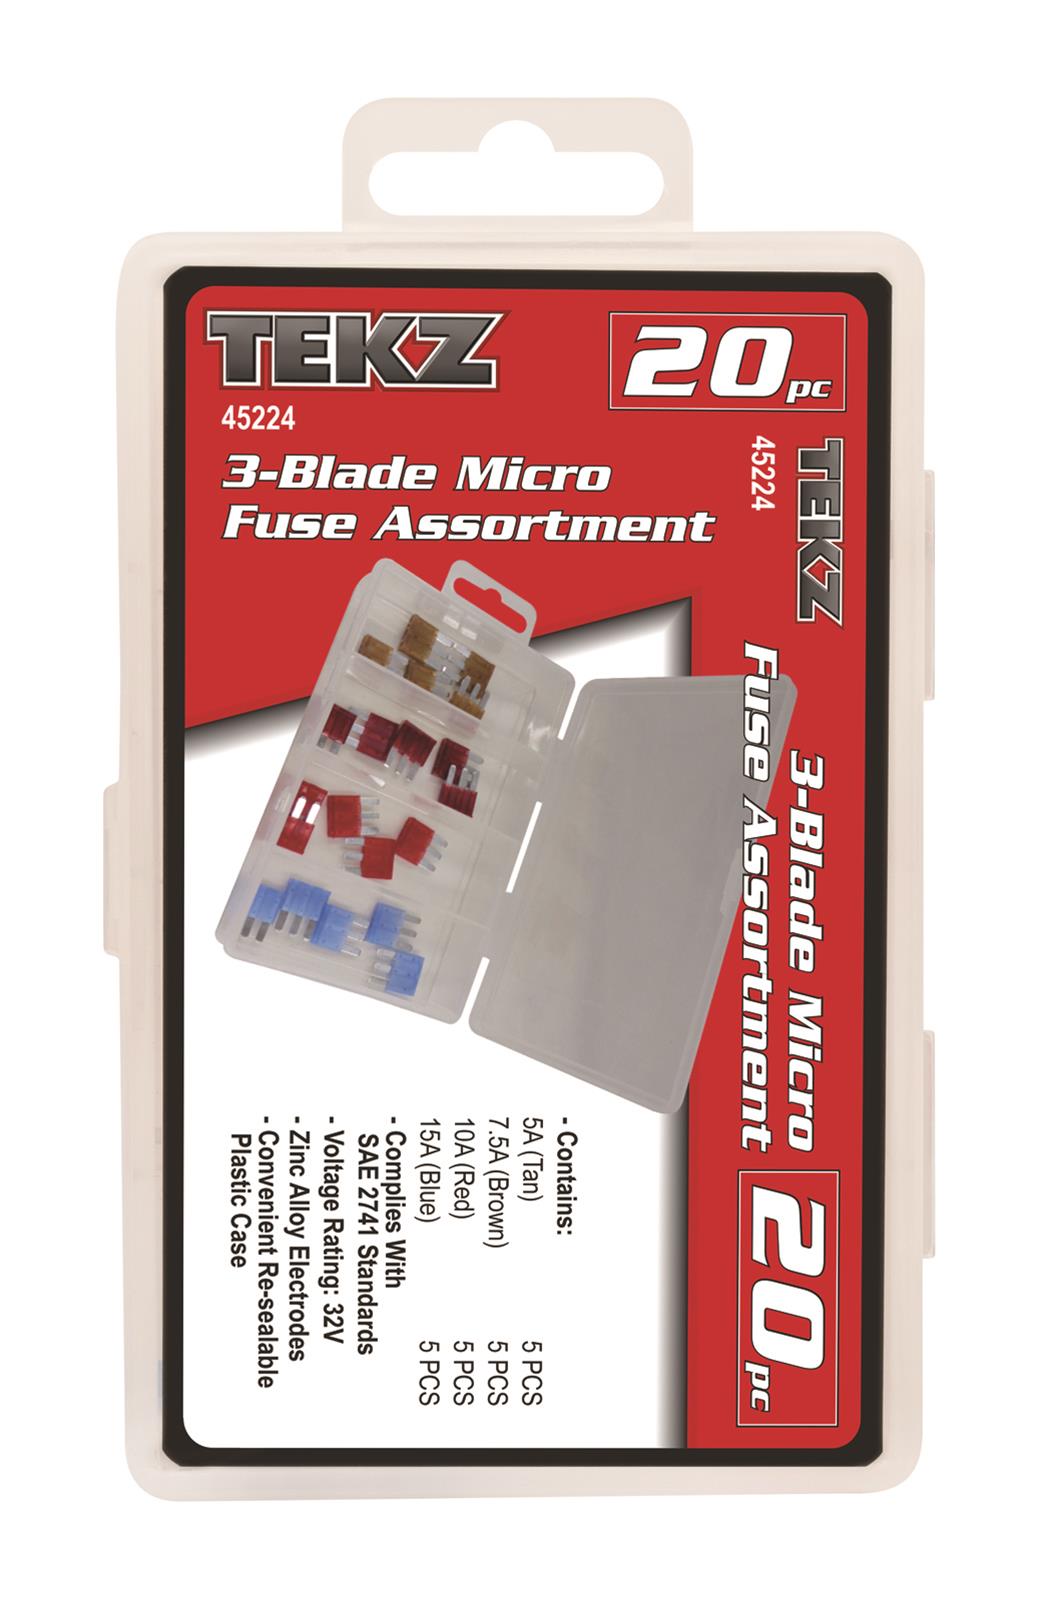 Titan Tools 45224 Titan Tekz 20 Piece Blade Micro Fuse Assortment Kits Summit Racing 